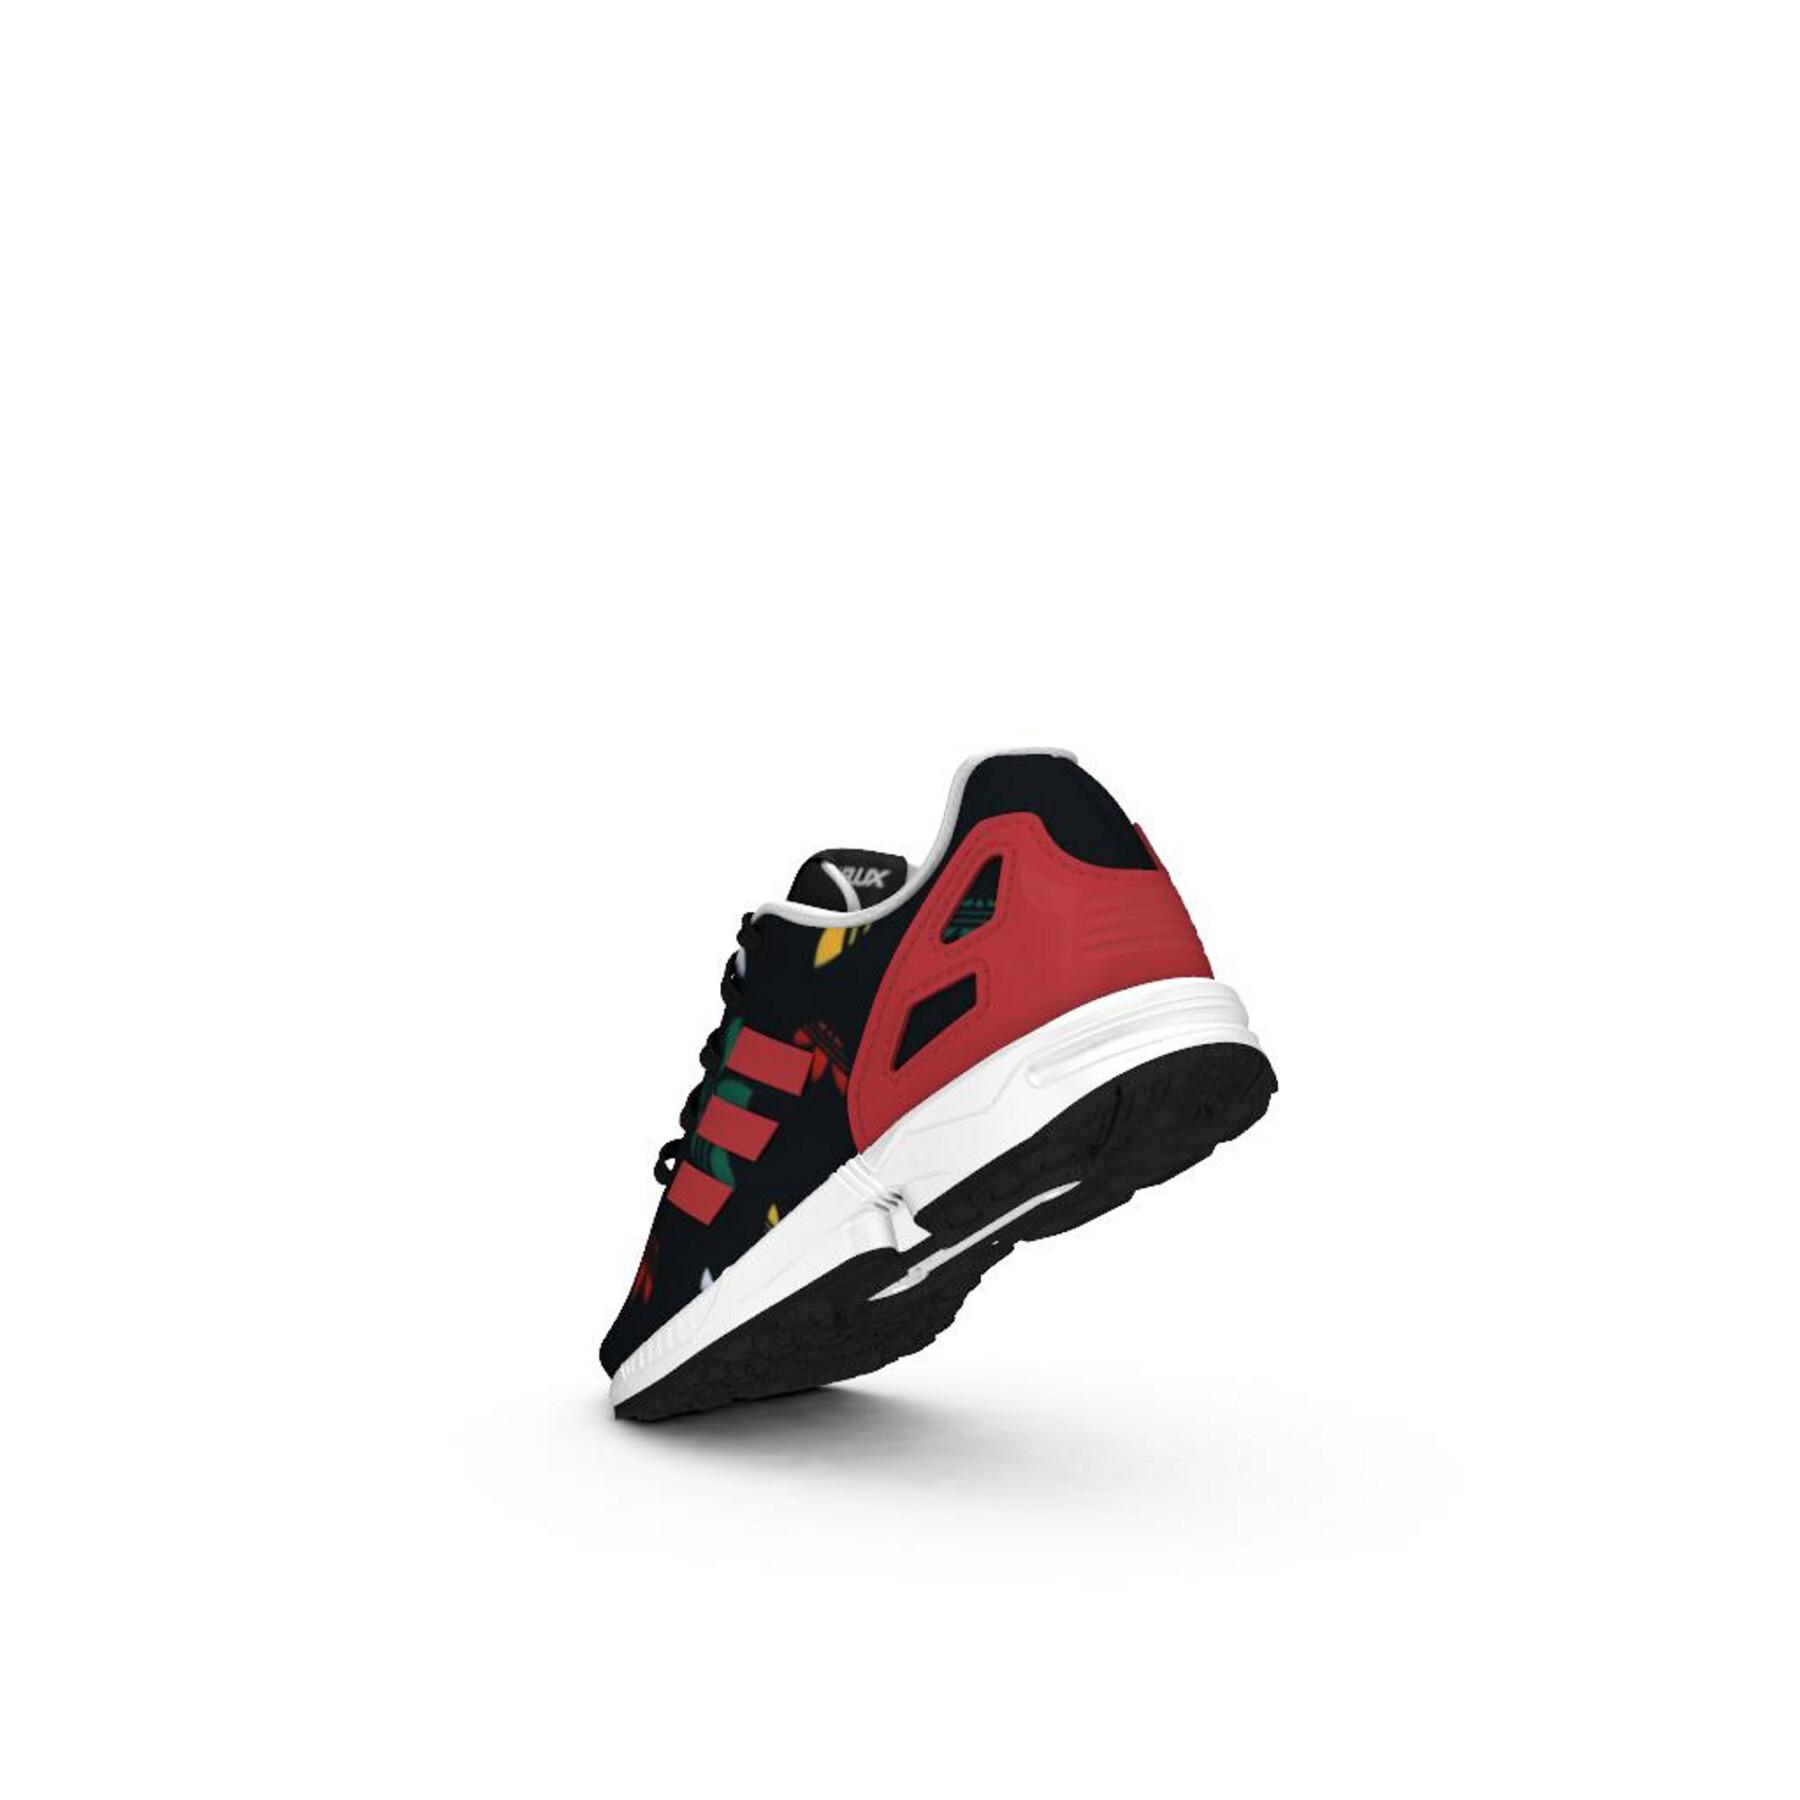 Kid sneakers adidas Originals ZX Flux